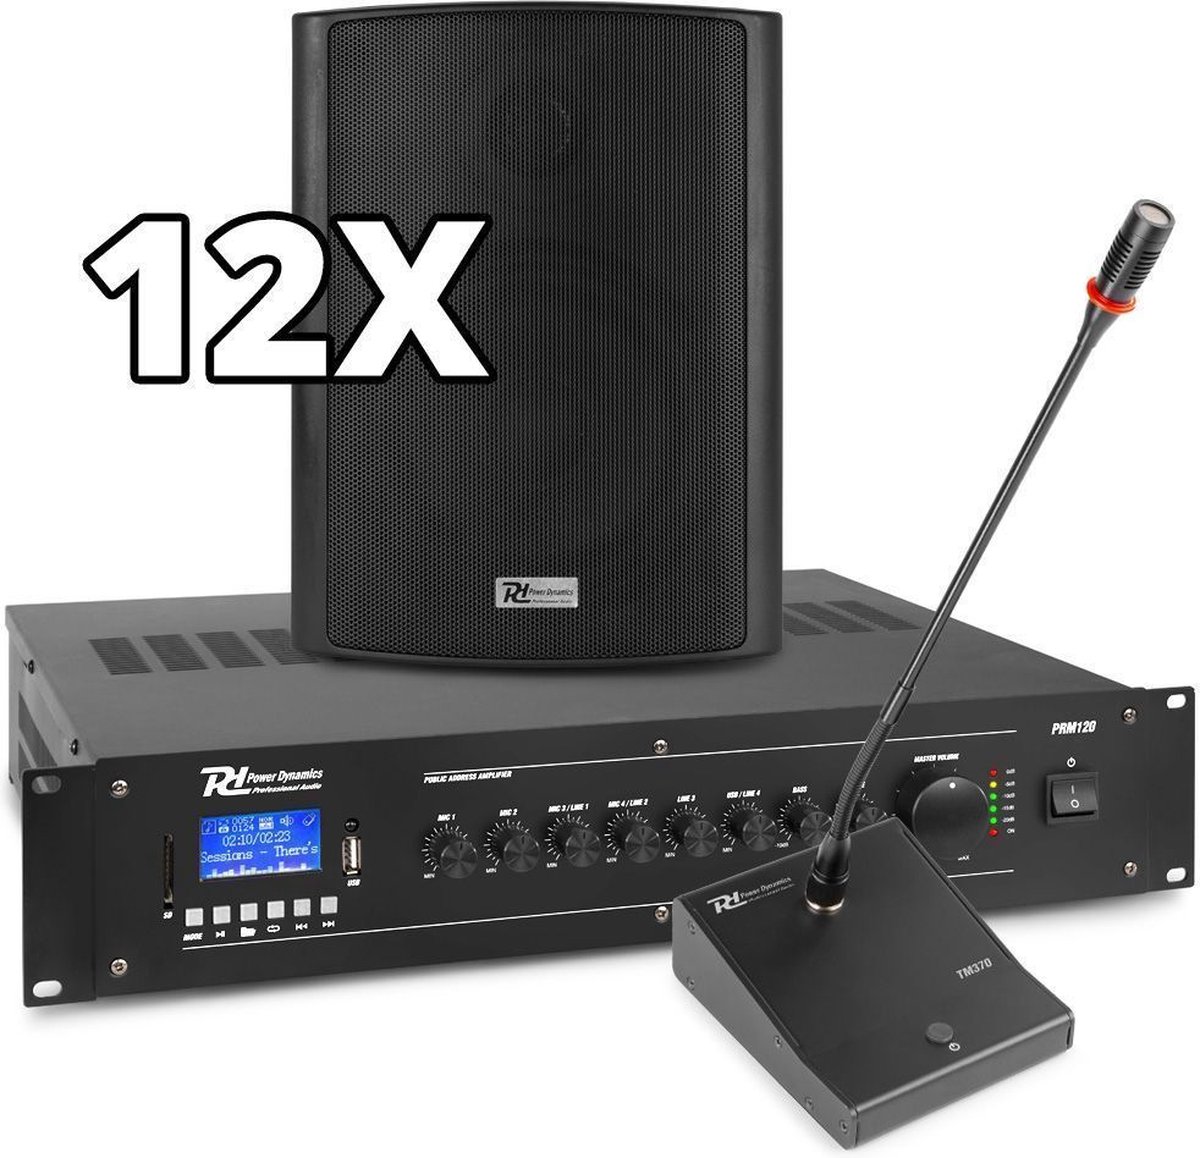 Power Dynamics complete 100V muziekinstallatie / omroepinstallatie met 12 speakers, 120W Bluetooth versterker en kabels - Compleet pakket!